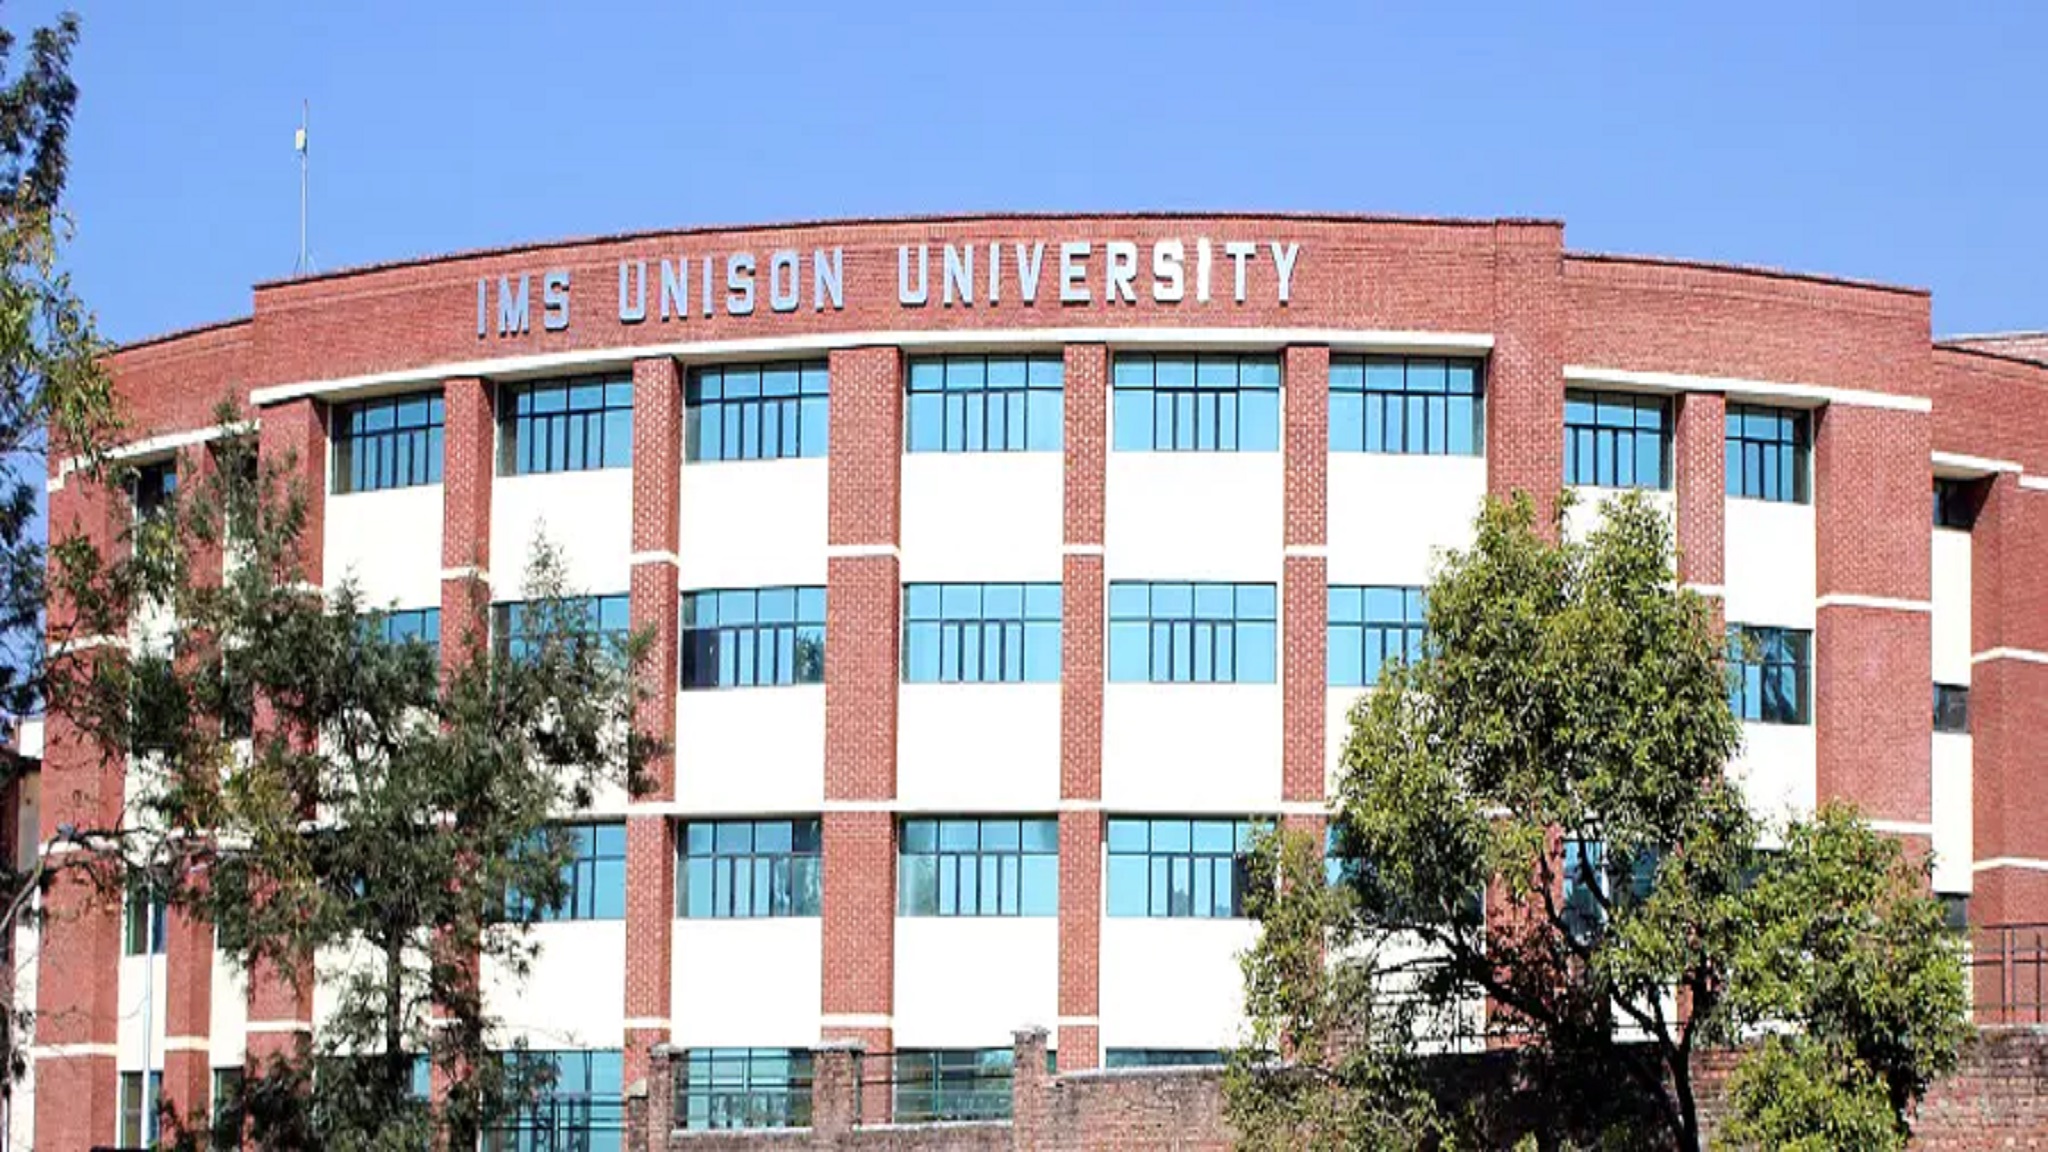 IMS Unison University